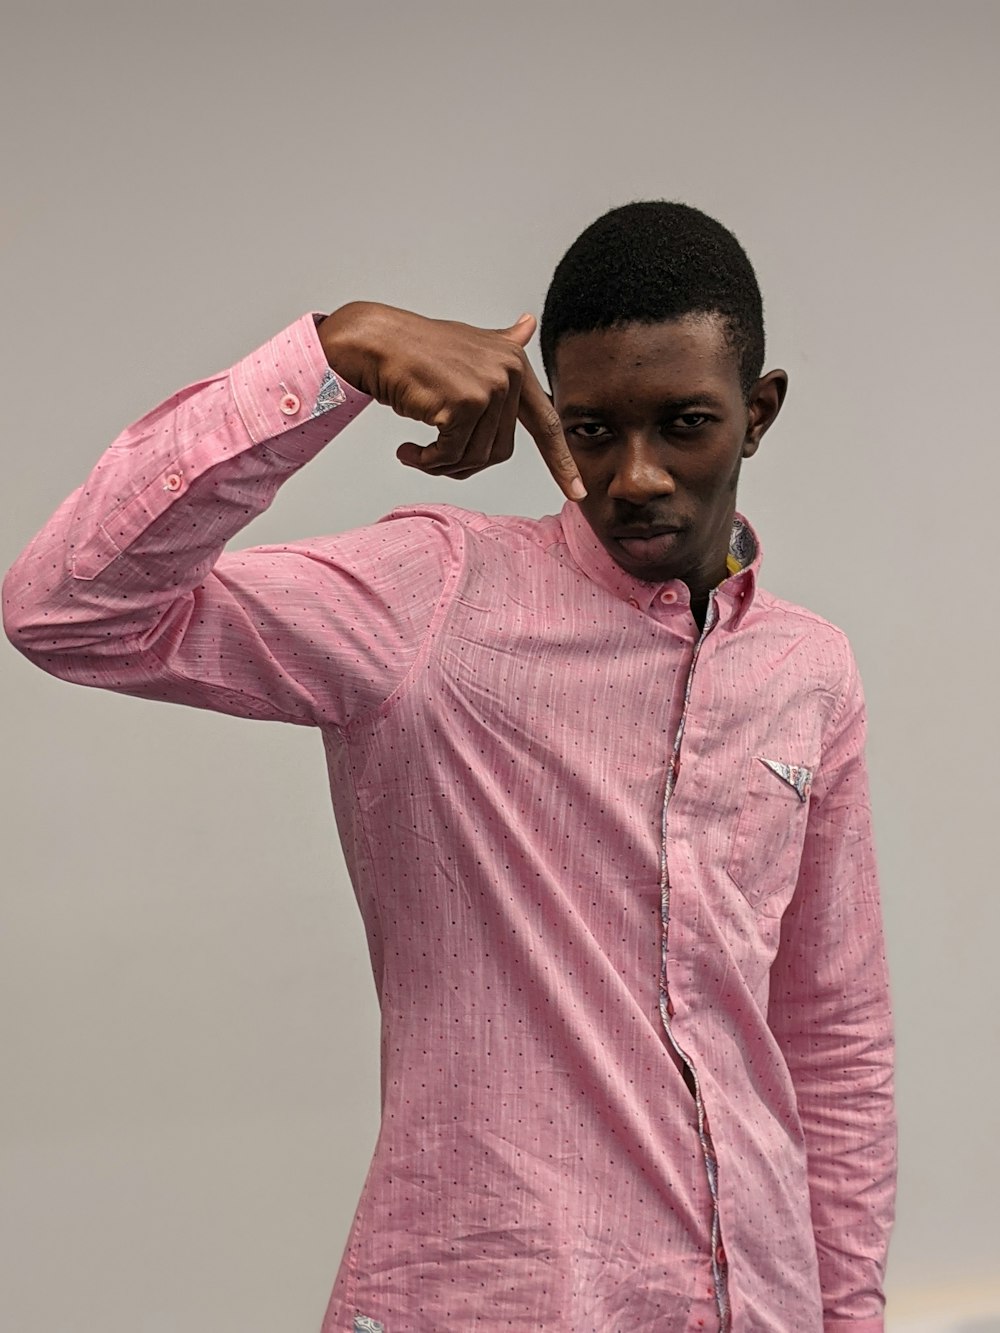 a man in a pink shirt